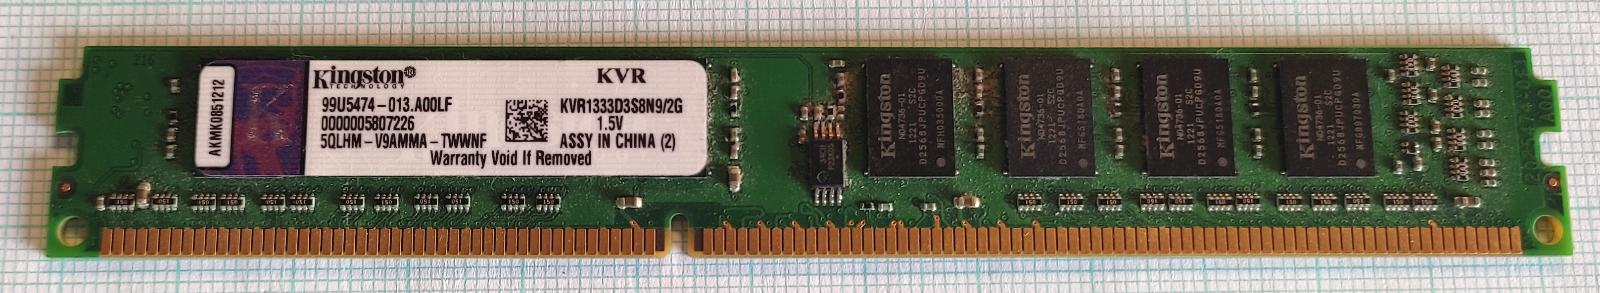 Paměť RAM do PC Kingston KVR1333D3S8N9/2G 2GB 1333MHz DDR3 - Počítače a hry